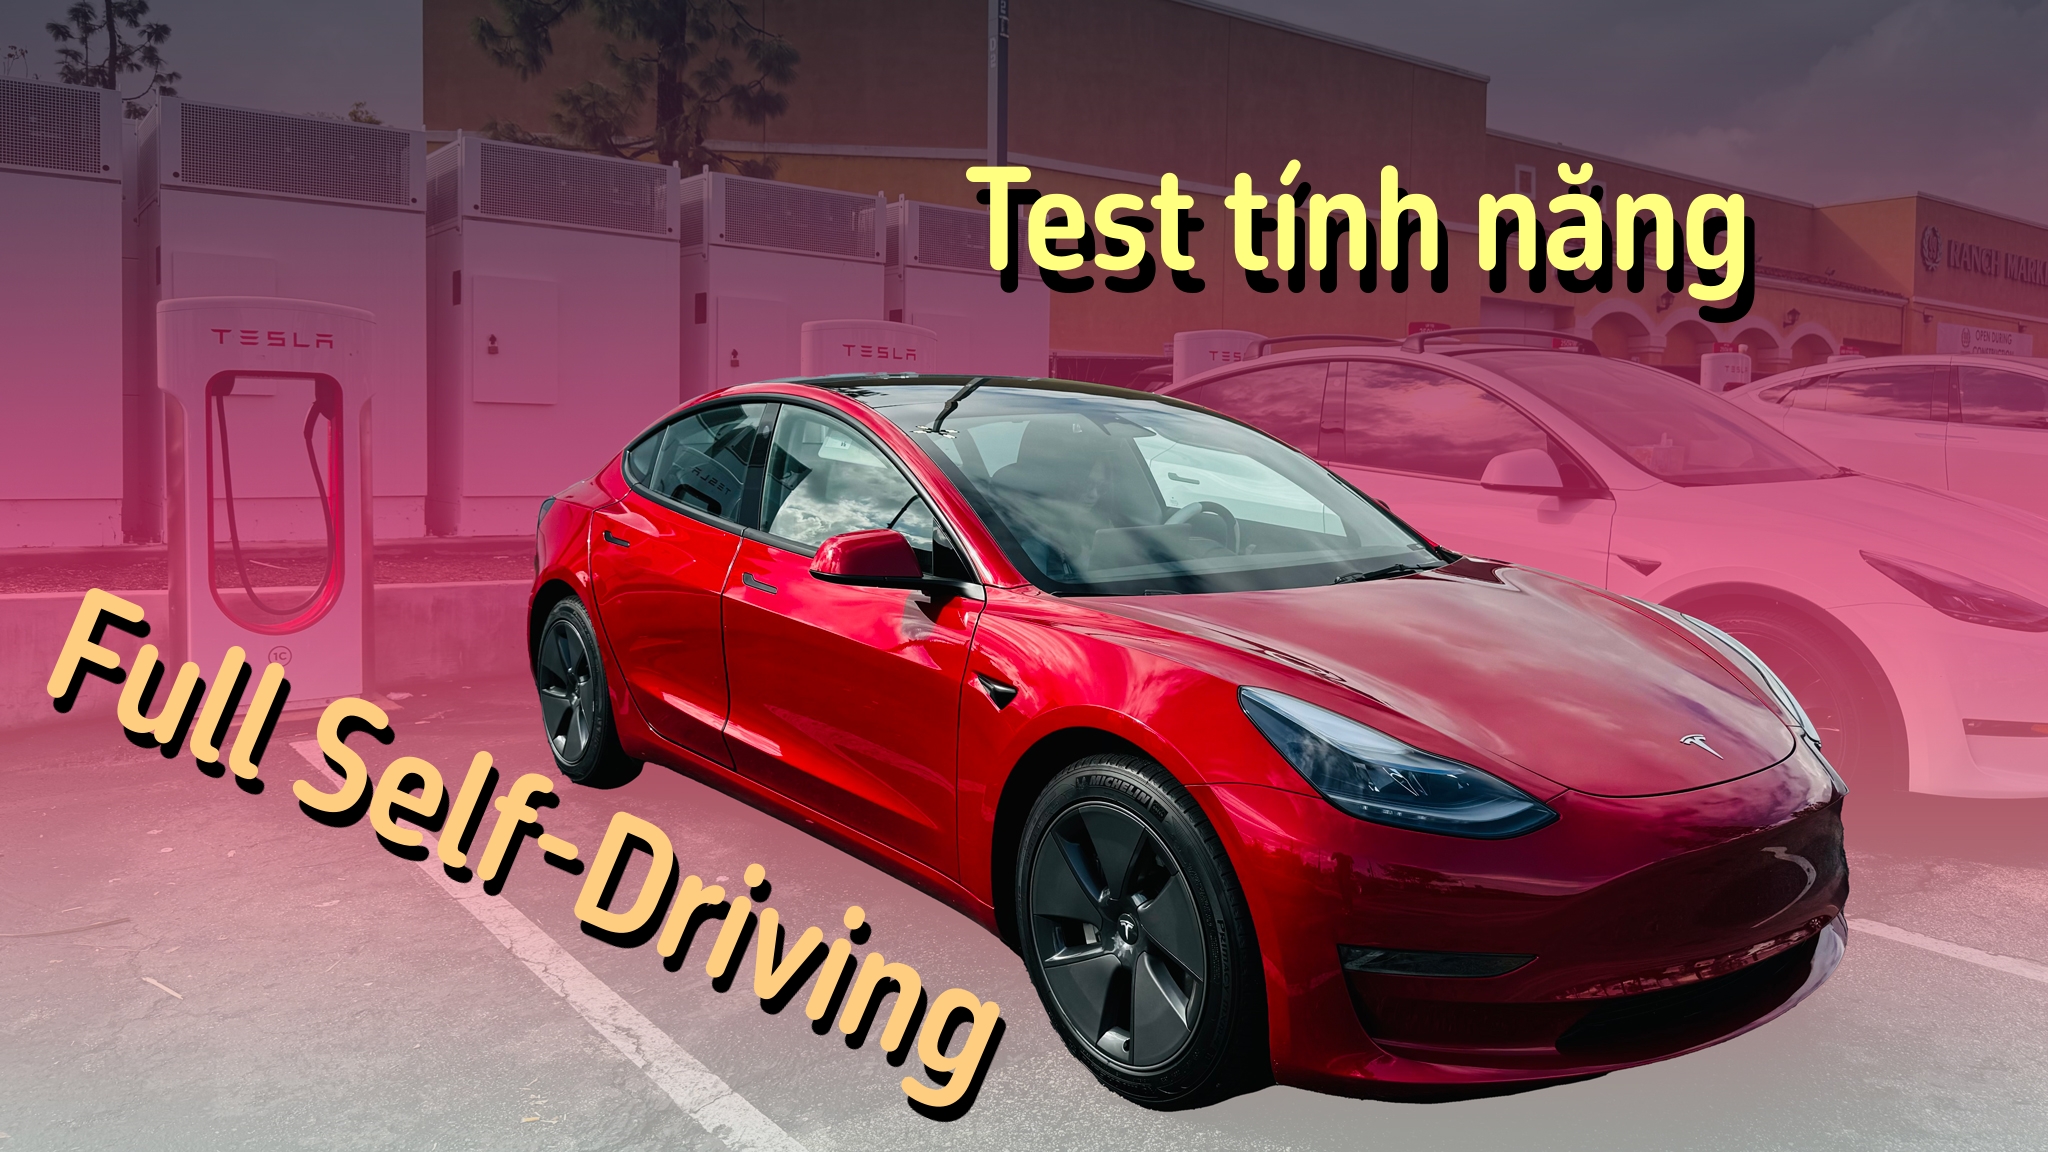 [Video] Dùng thử tính năng Full Self-Driving của Tesla xem có gì hay